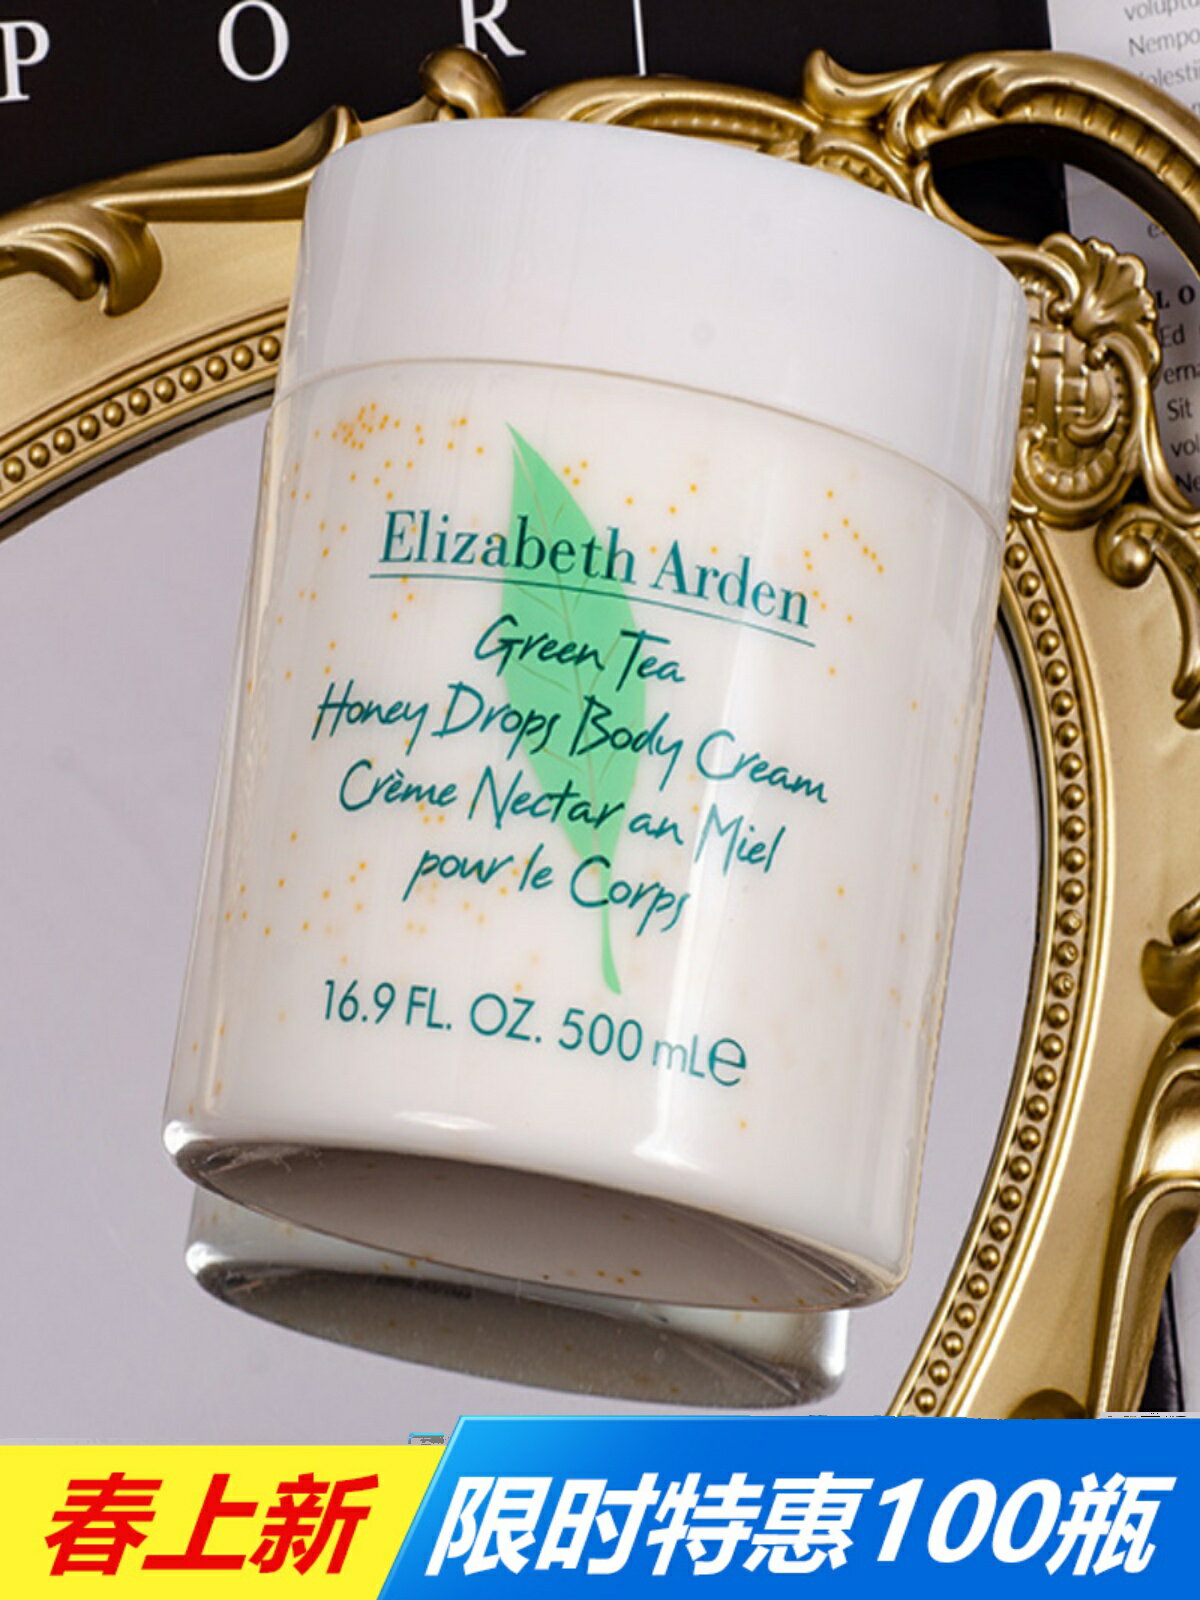 夏上新伊麗莎白雅頓綠茶蜜滴身體霜500ml罐裝身體乳清爽滋潤保濕-朵朵雜貨店